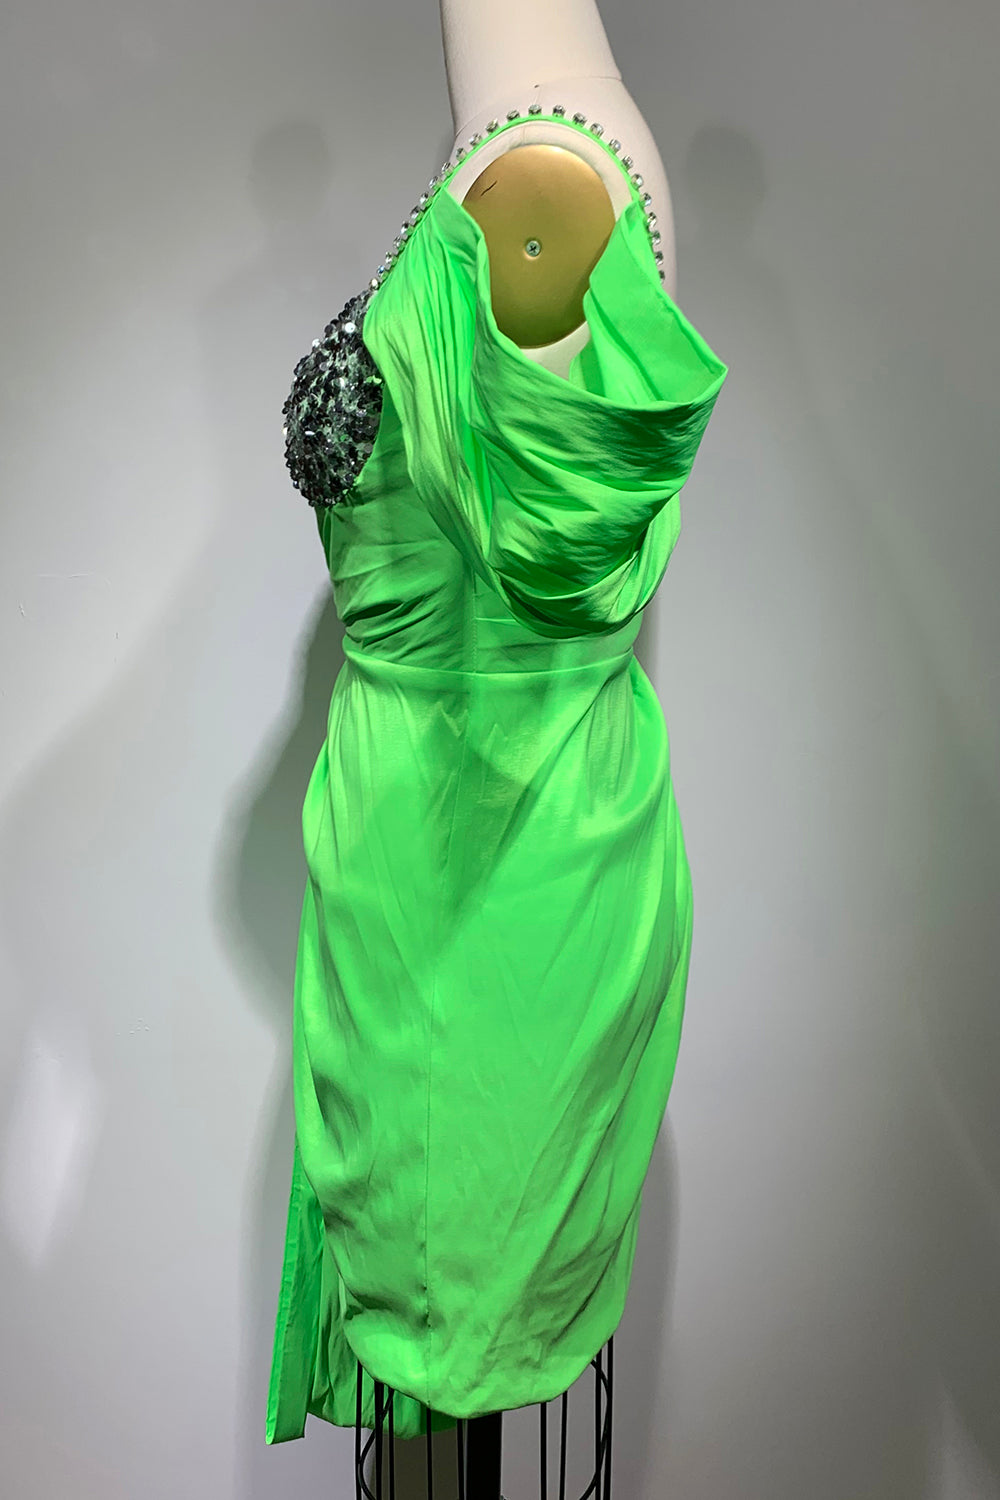 Vestido assimétrico de cetim verde com tiras de cristais e miçangas